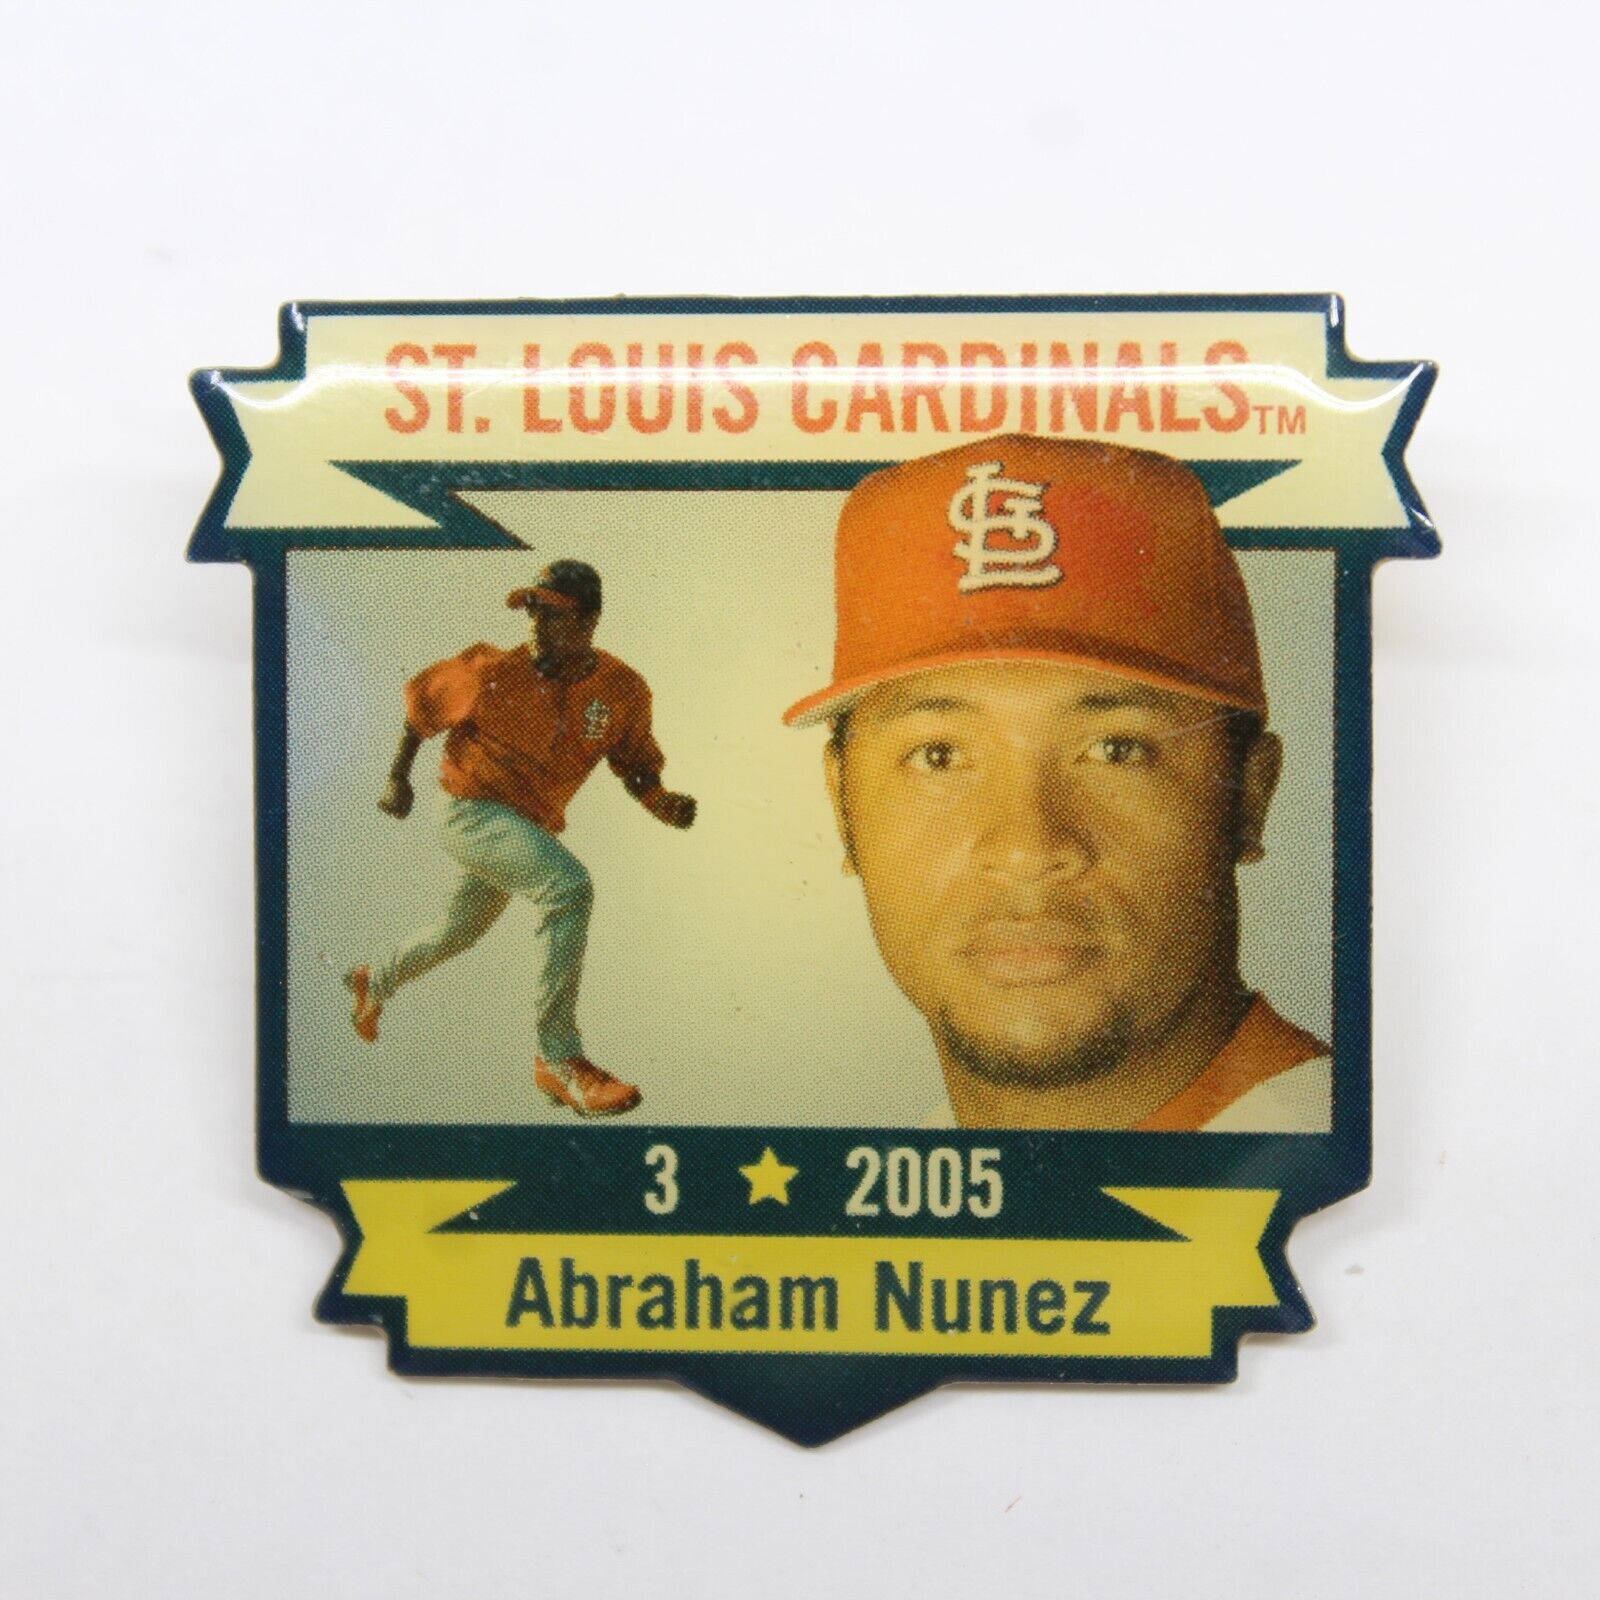 St. Louis Cardinals Abraham Nunez #3 2005 Pin Lapel Enamel Collectible